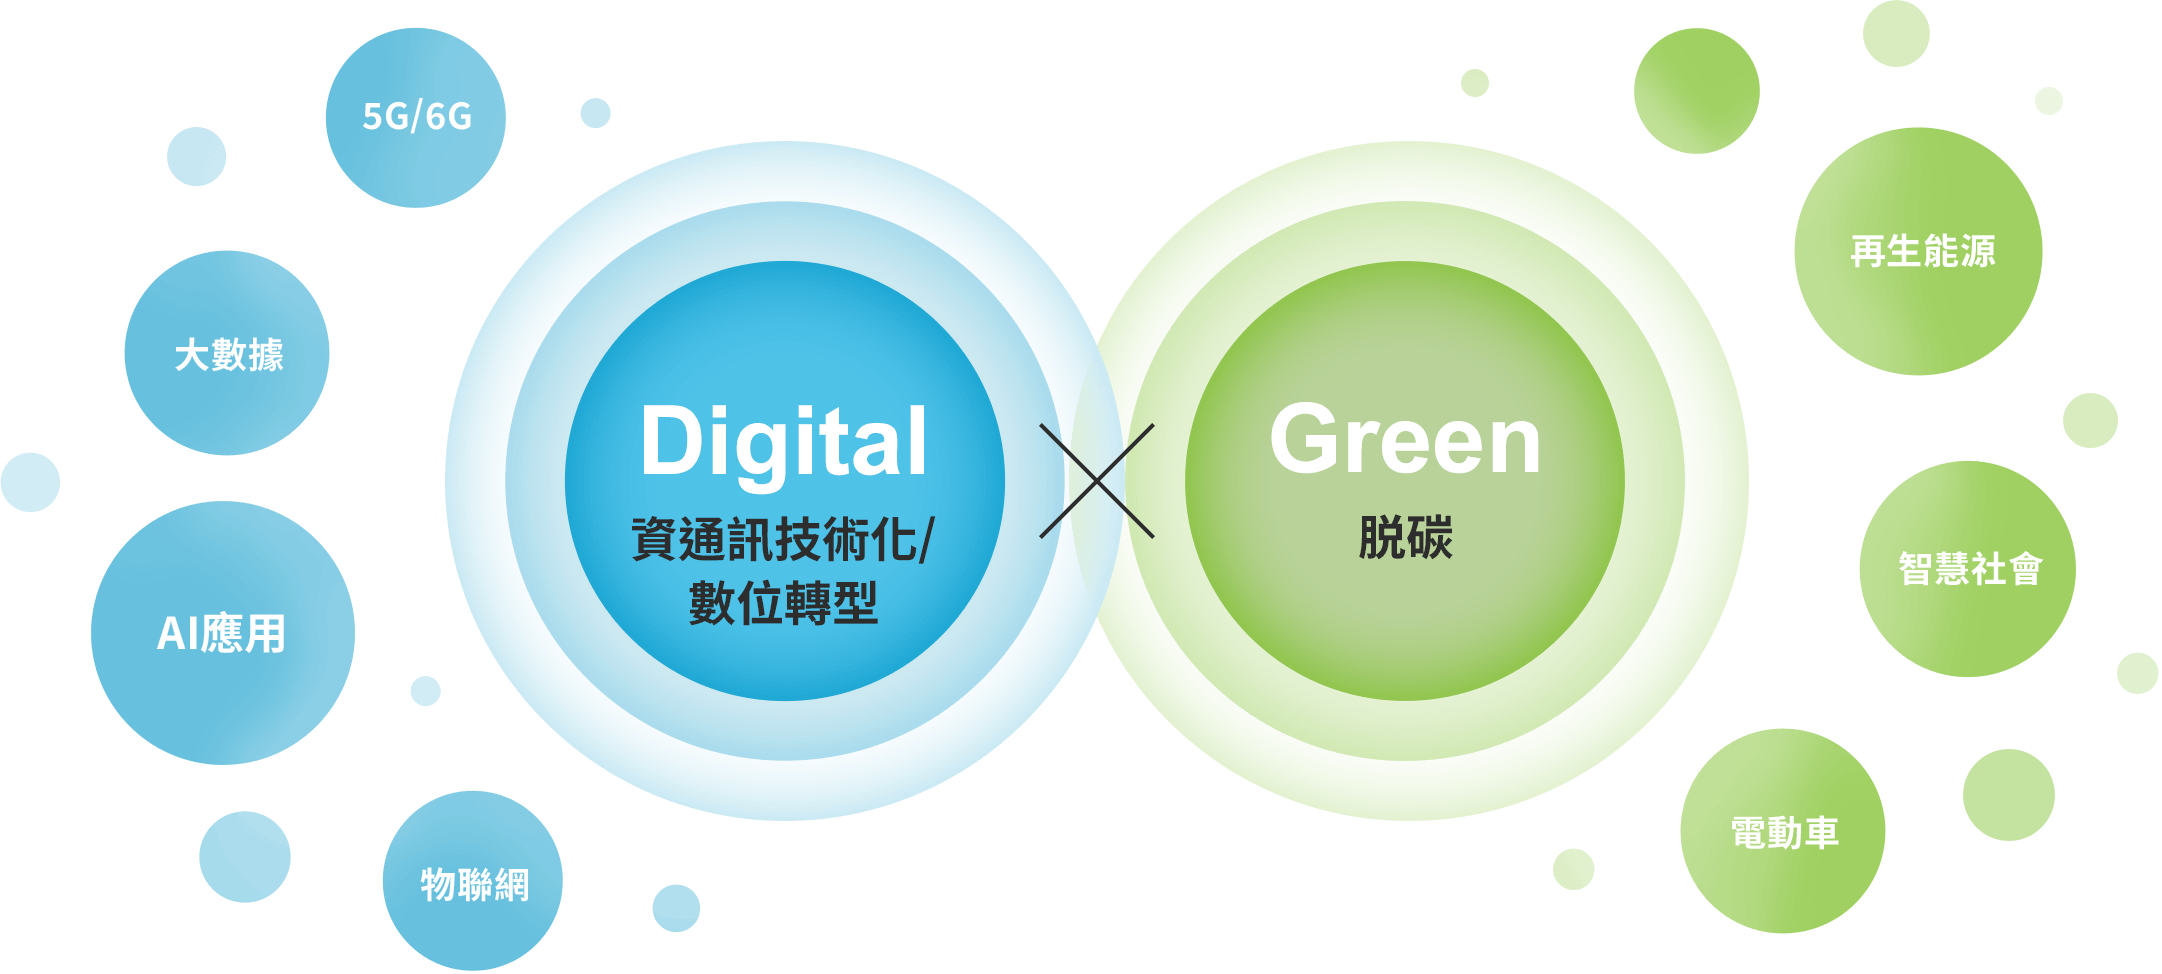 這是Digital×Green的示意圖。 Digital指的是ICT /DX （資通訊技術以及數位轉型）。例如5G/6G、大數據、AI人工智慧應用、IoT物聯網。Green指的是脫碳。例如可再生能源、智慧社會、電動車。